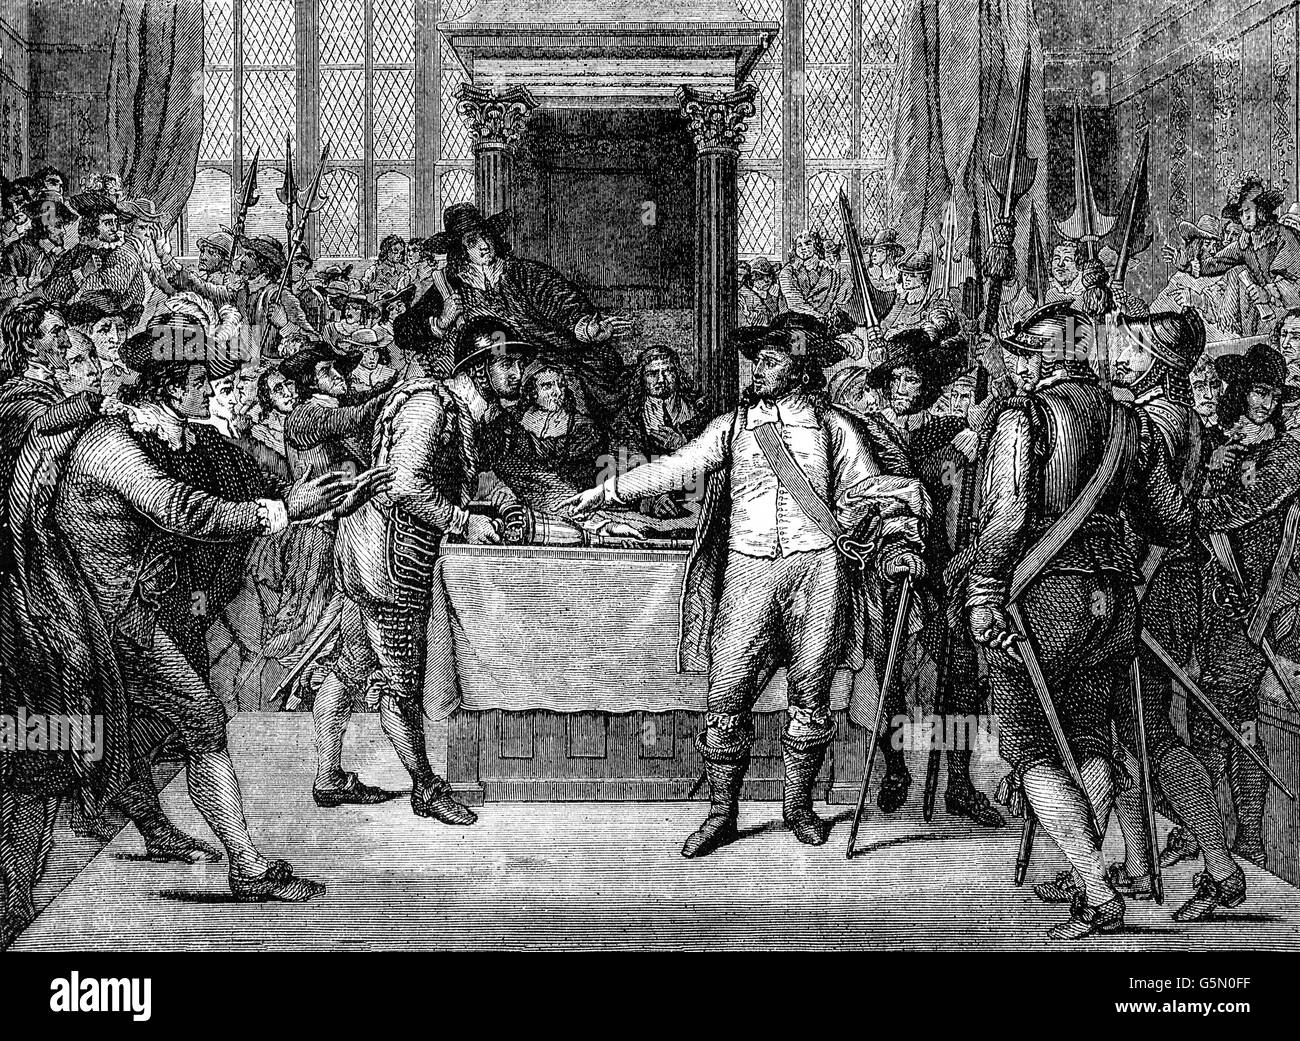 Gegen Cromwells Wünsche kehrte das Rumpfparlament auf eigene Rechnung für eine neue Regierung zu diskutieren. Cromwell wurde so wütend, dass am 20. April 1653, unterstützt von etwa vierzig Rundköpfen er die Kammer deaktiviert und das Parlament gewaltsam aufgelöst. Stockfoto